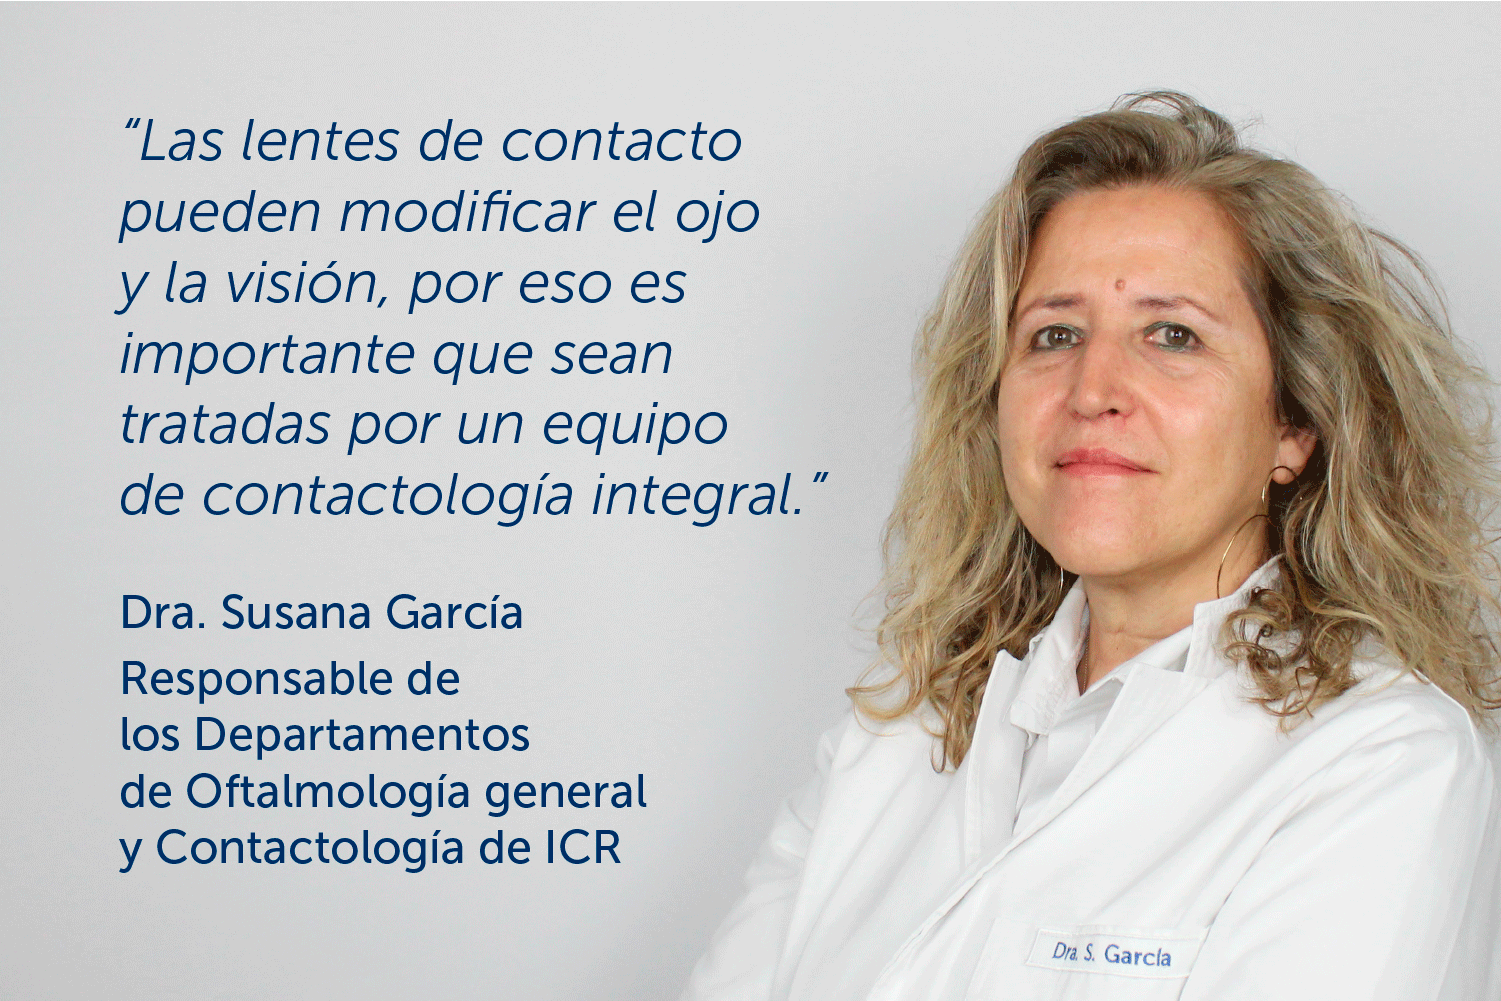 “Es importante que las lentes de contacto sean tratadas por un equipo de contactología integral” – Entrevista a la Dra. García